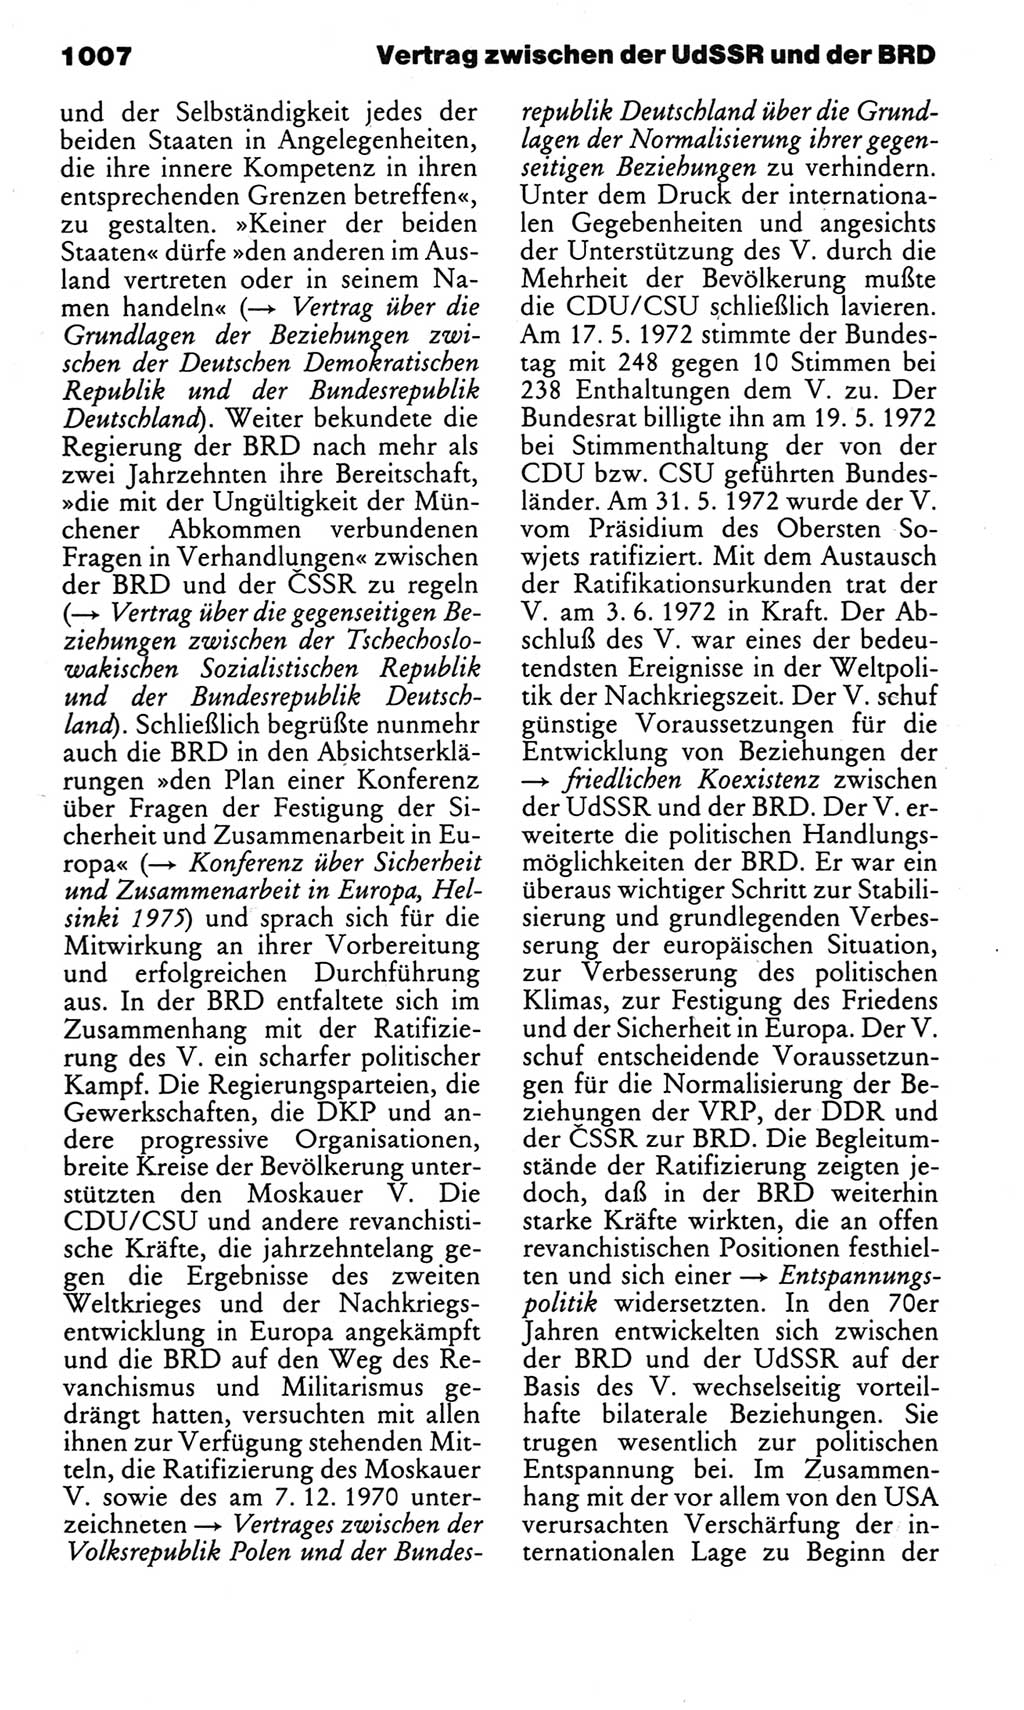 Kleines politisches Wörterbuch [Deutsche Demokratische Republik (DDR)] 1983, Seite 1007 (Kl. pol. Wb. DDR 1983, S. 1007)